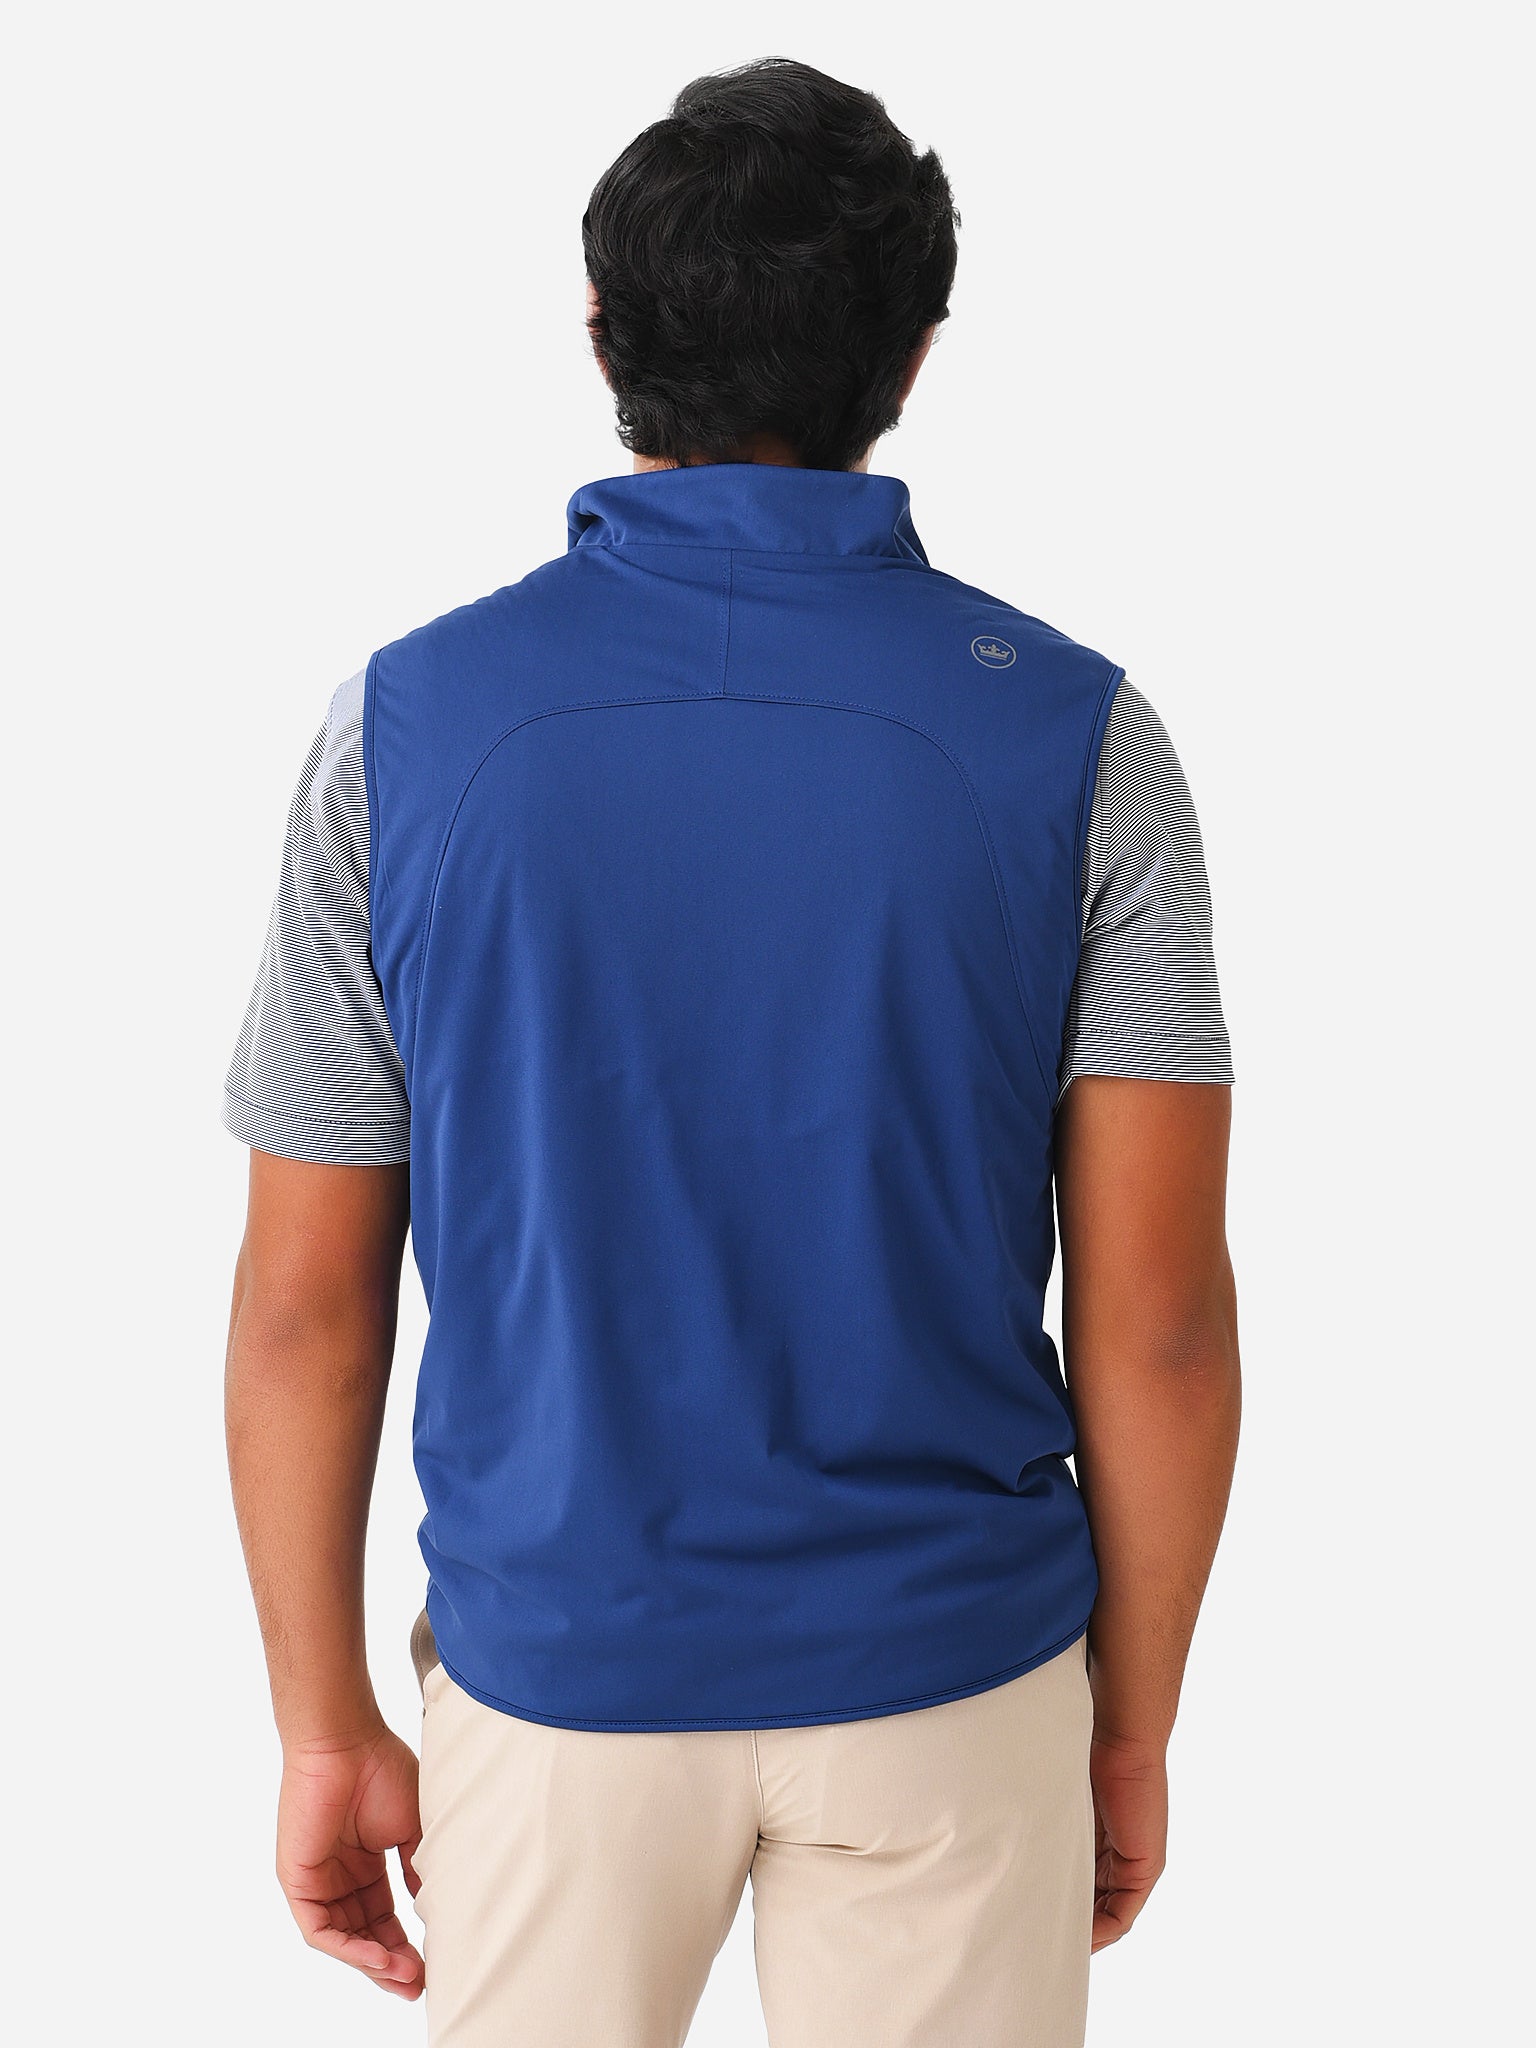 Peter Millar Crown Sport Men's Thermal Flow Insulated Half-Zip Vest